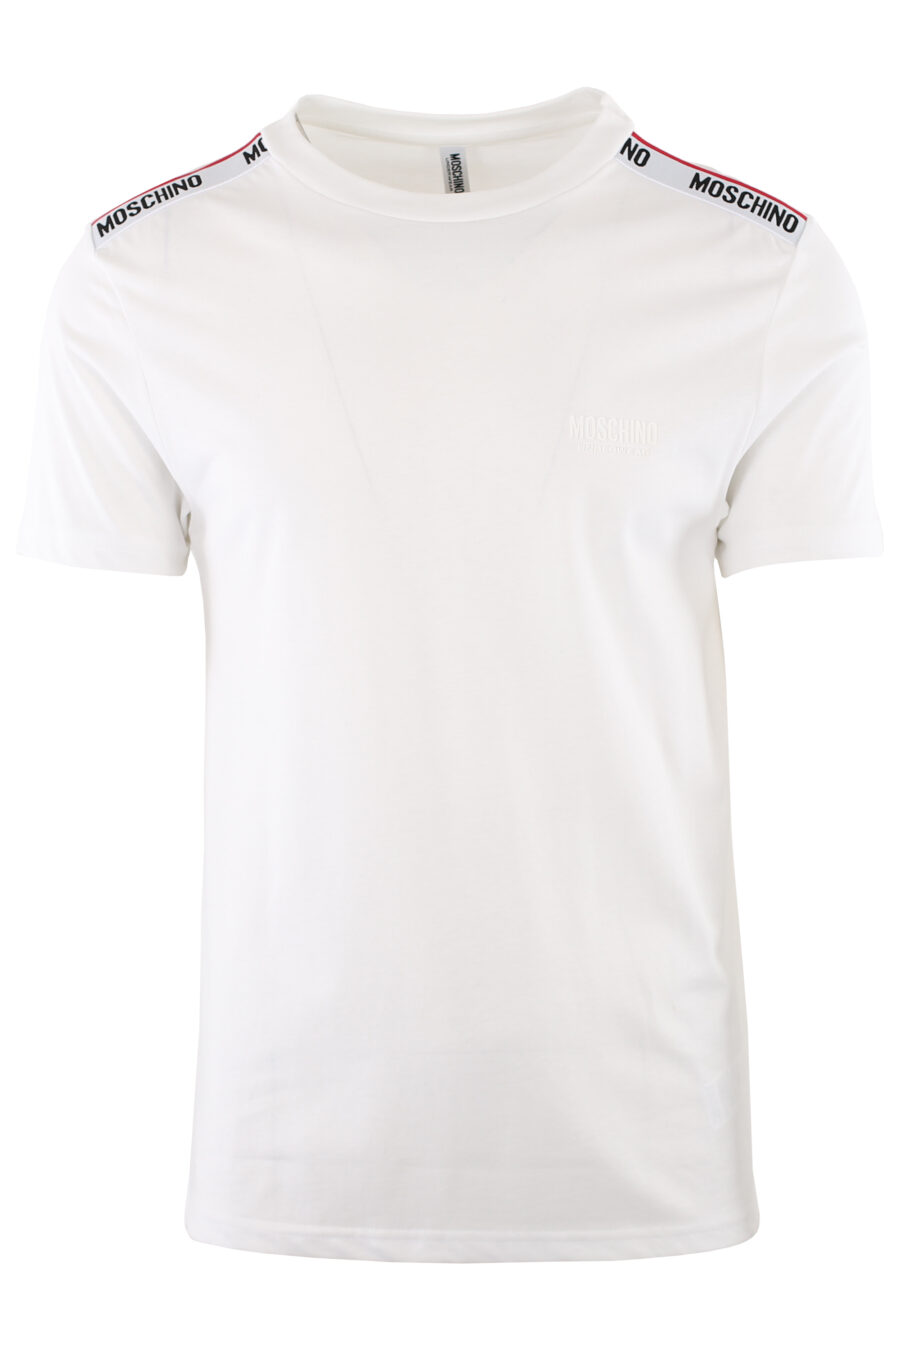 Camiseta blanca con logotipo en cinta hombros - IMG 7415